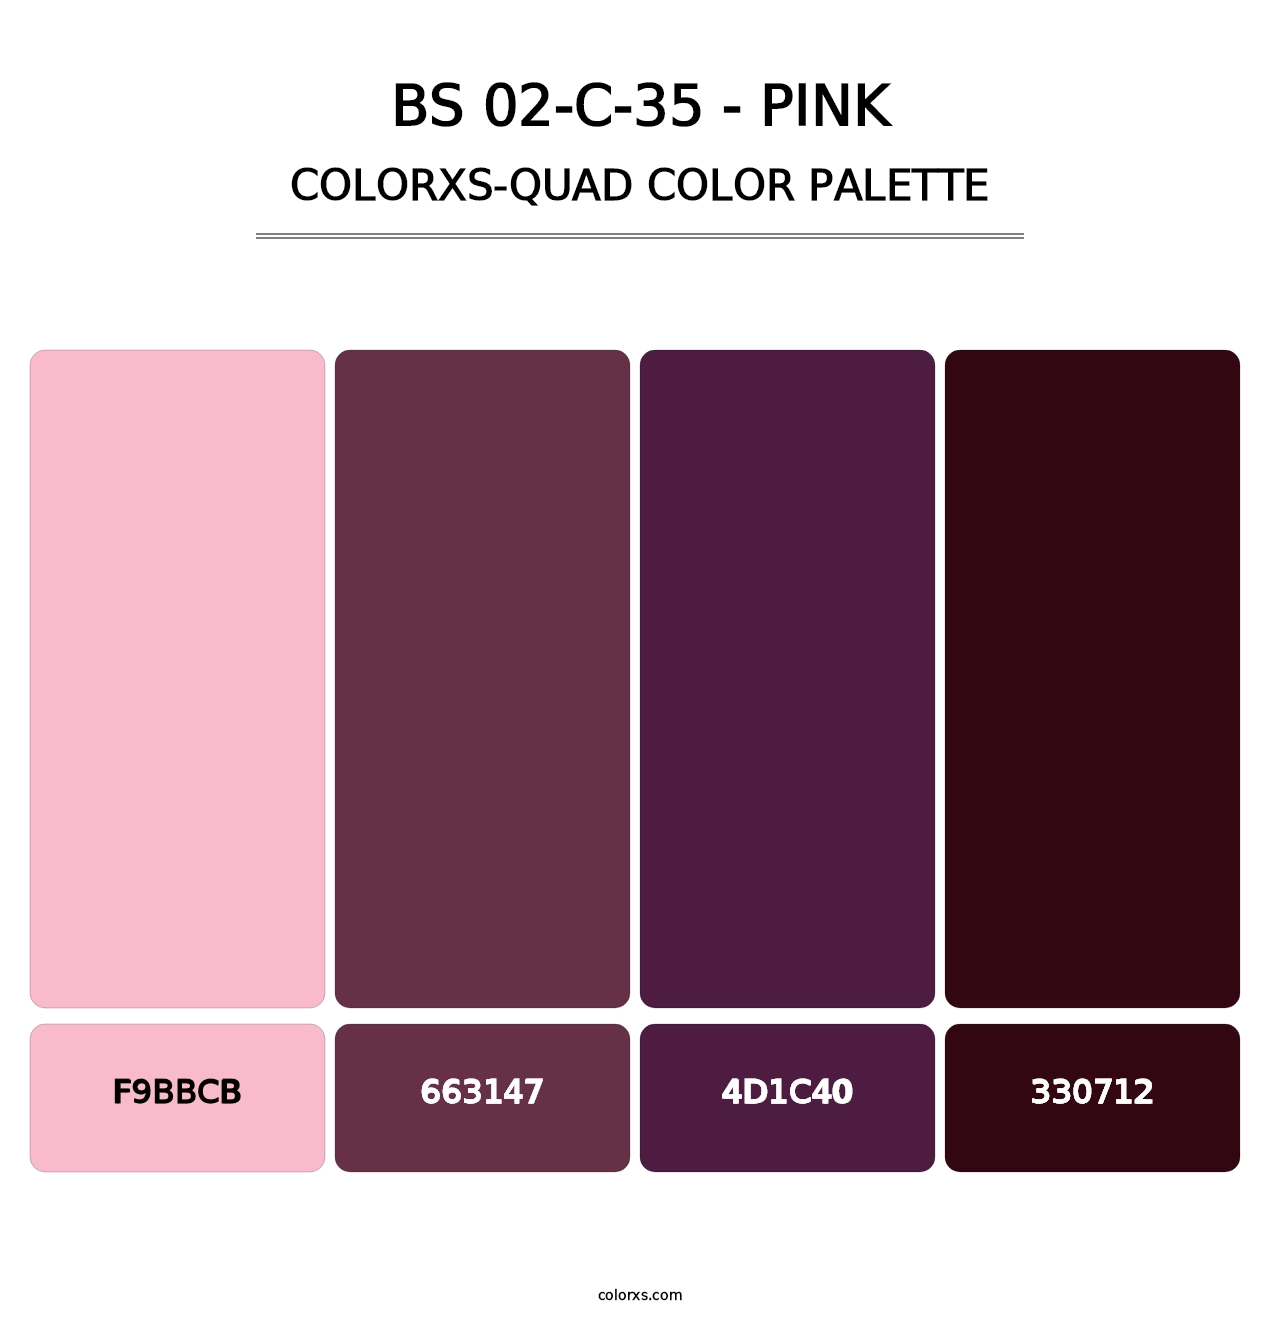 BS 02-C-35 - Pink - Colorxs Quad Palette